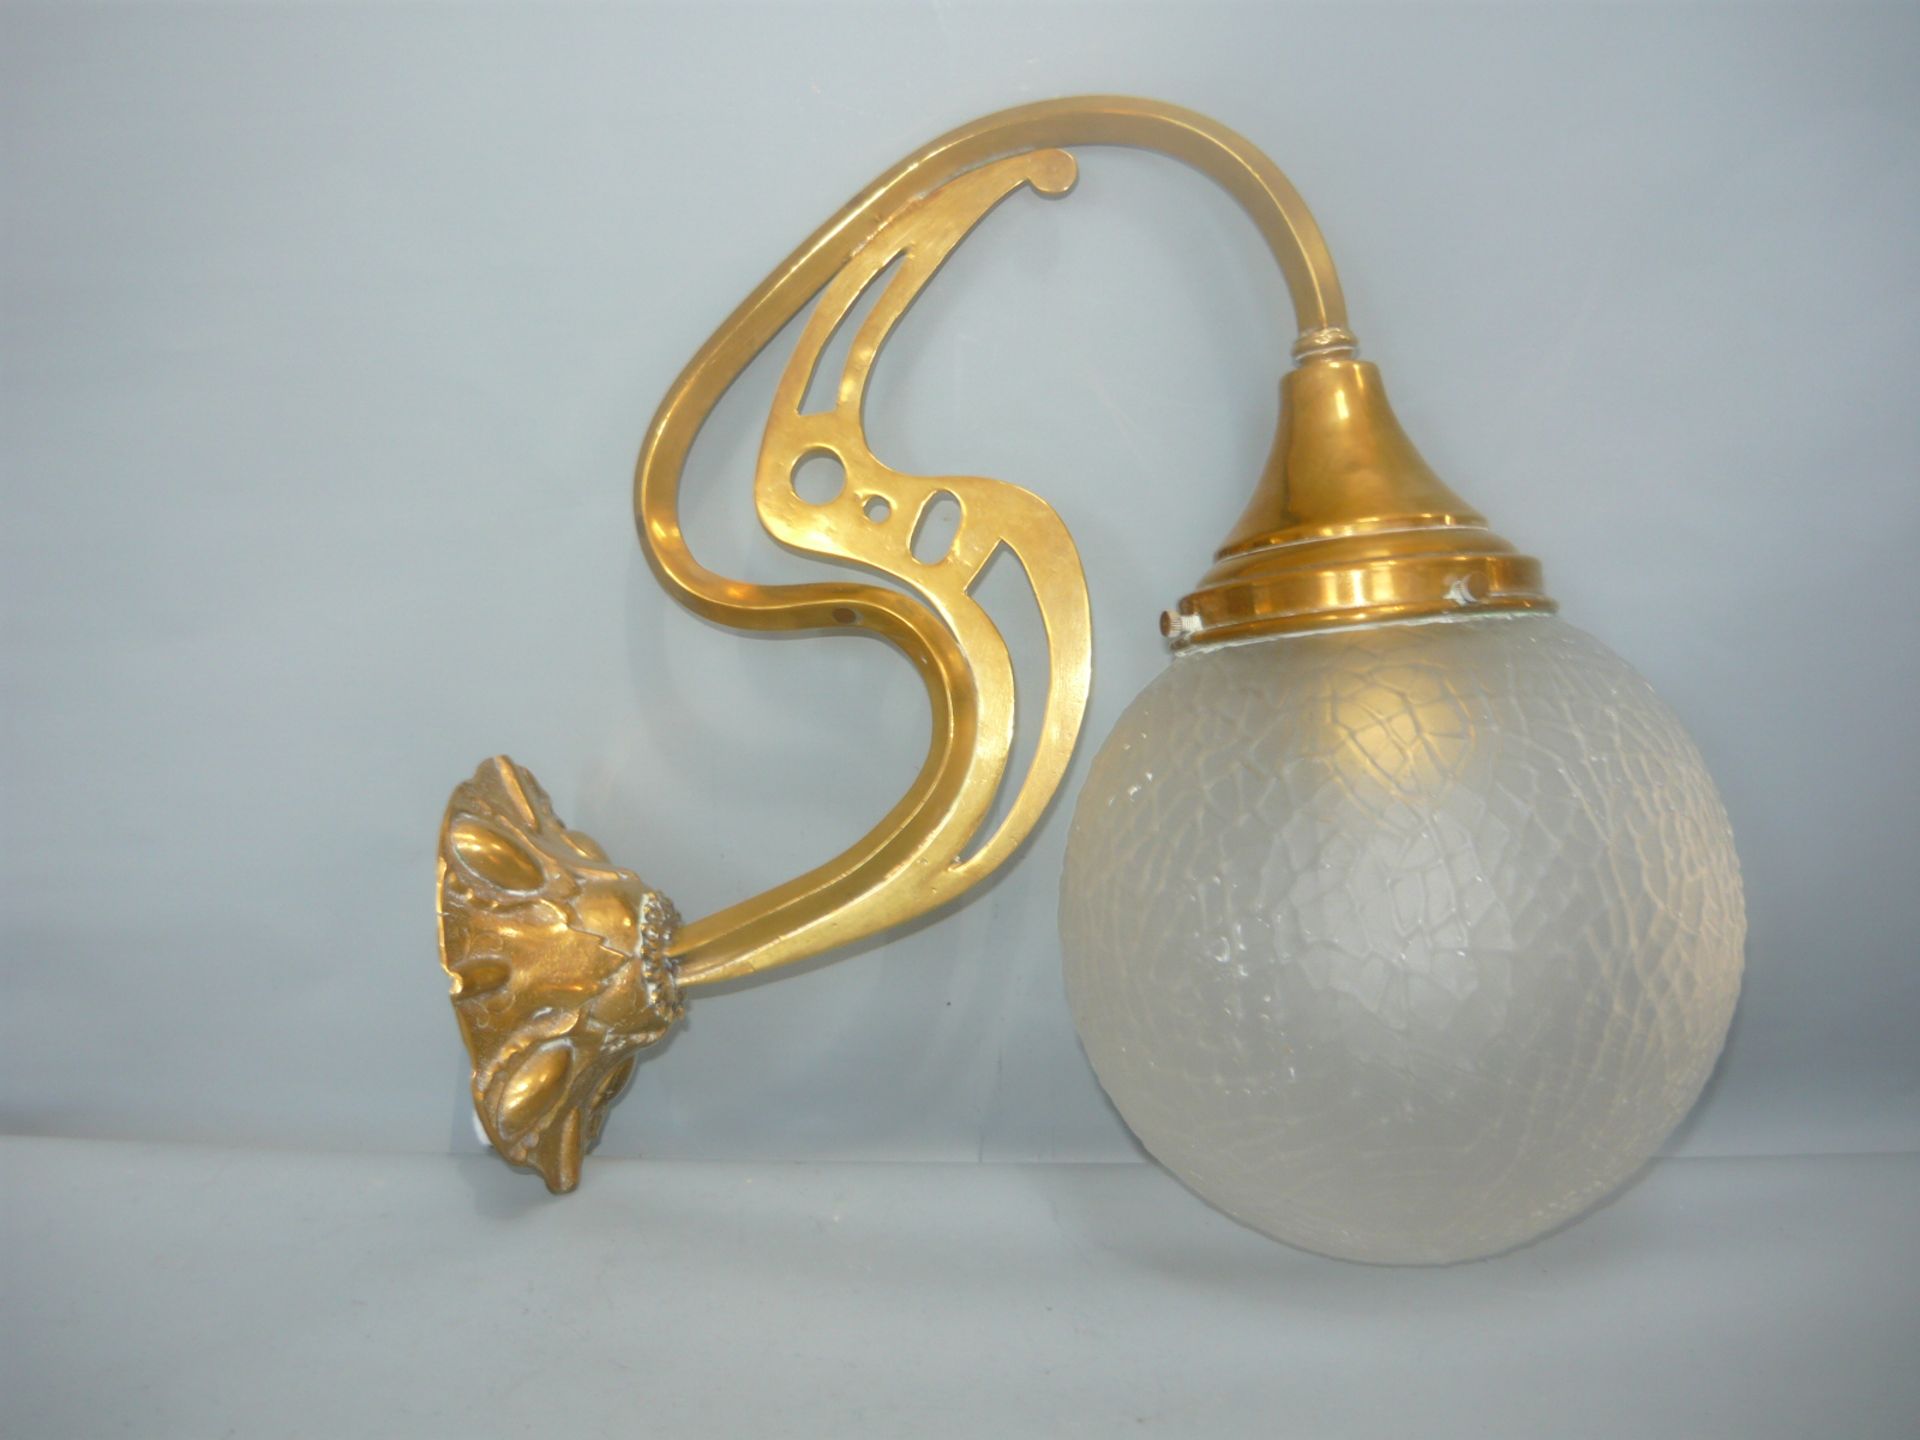 Jugendstil Wandlampe. Metall & Glas. Nicht geprüft und ohne Garantie. L. 31, H. 29cm.